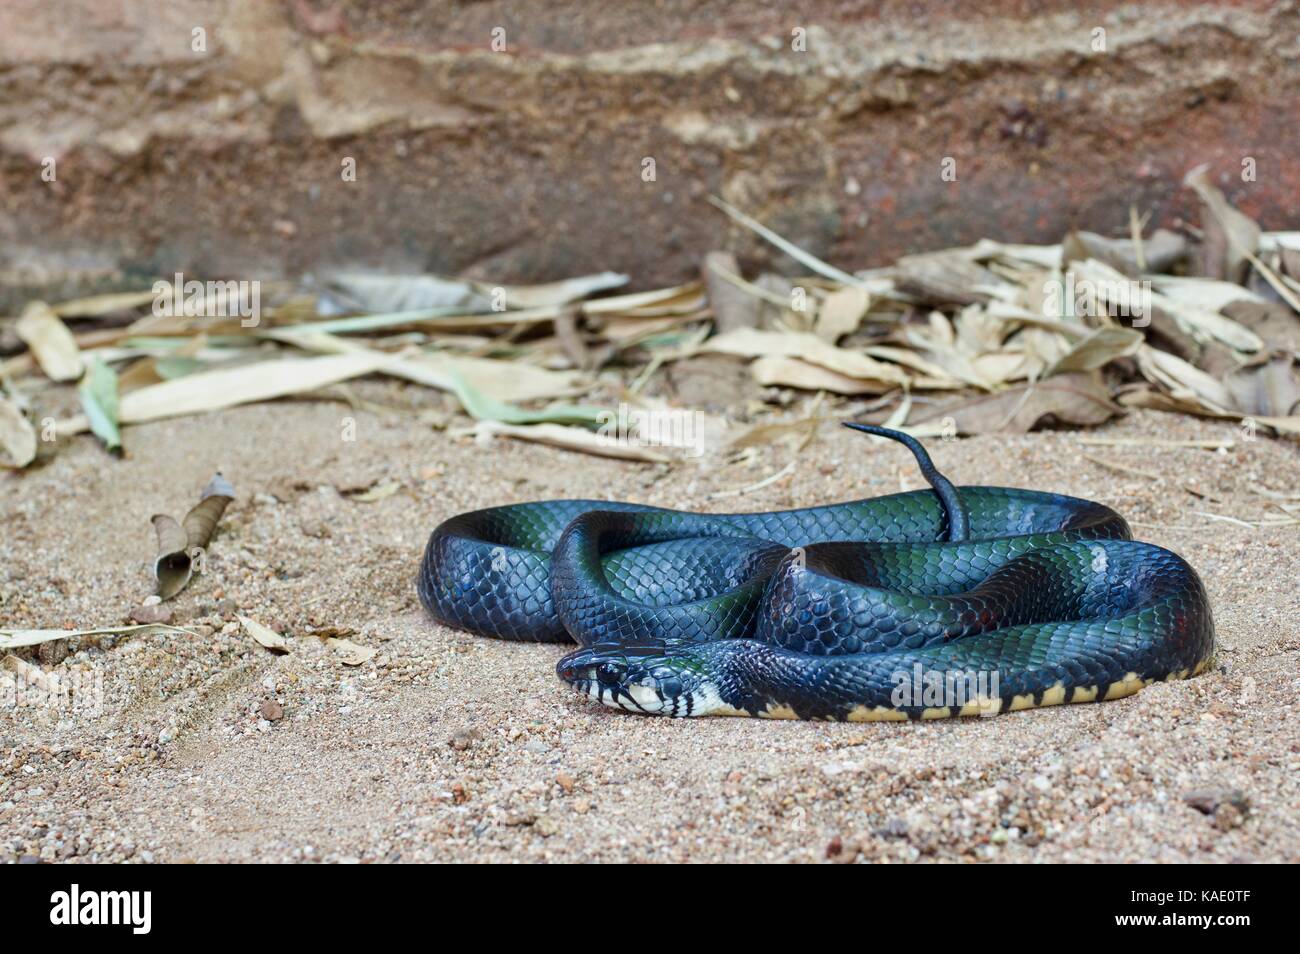 A Texas Indigo Snake (Drymarchon melanurus erebennus) on sandy ground in Alamos, Sonora, Mexico Stock Photo